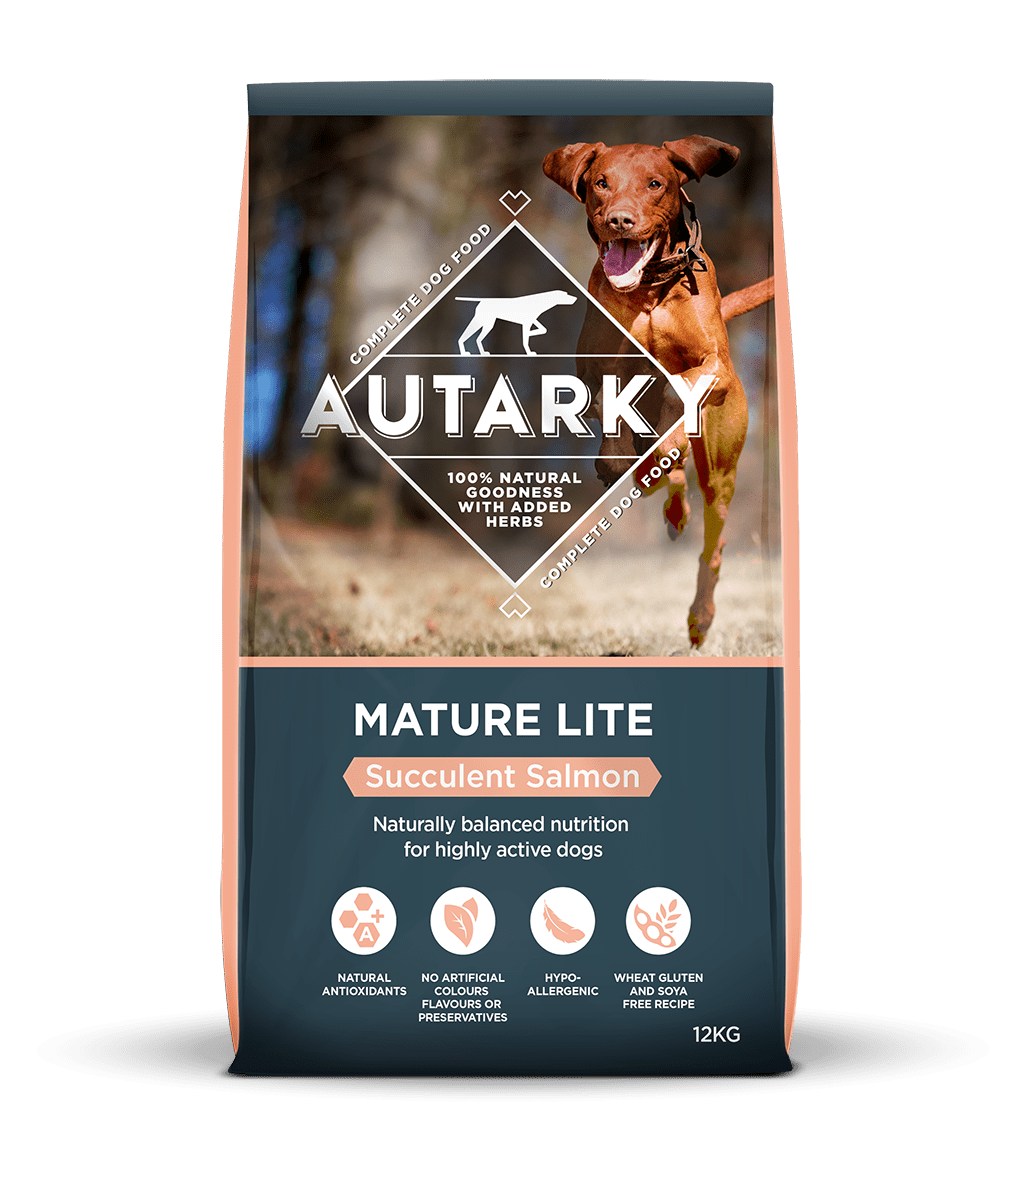 Autarky Mature Lite Salmon, Autarky, 12 kg